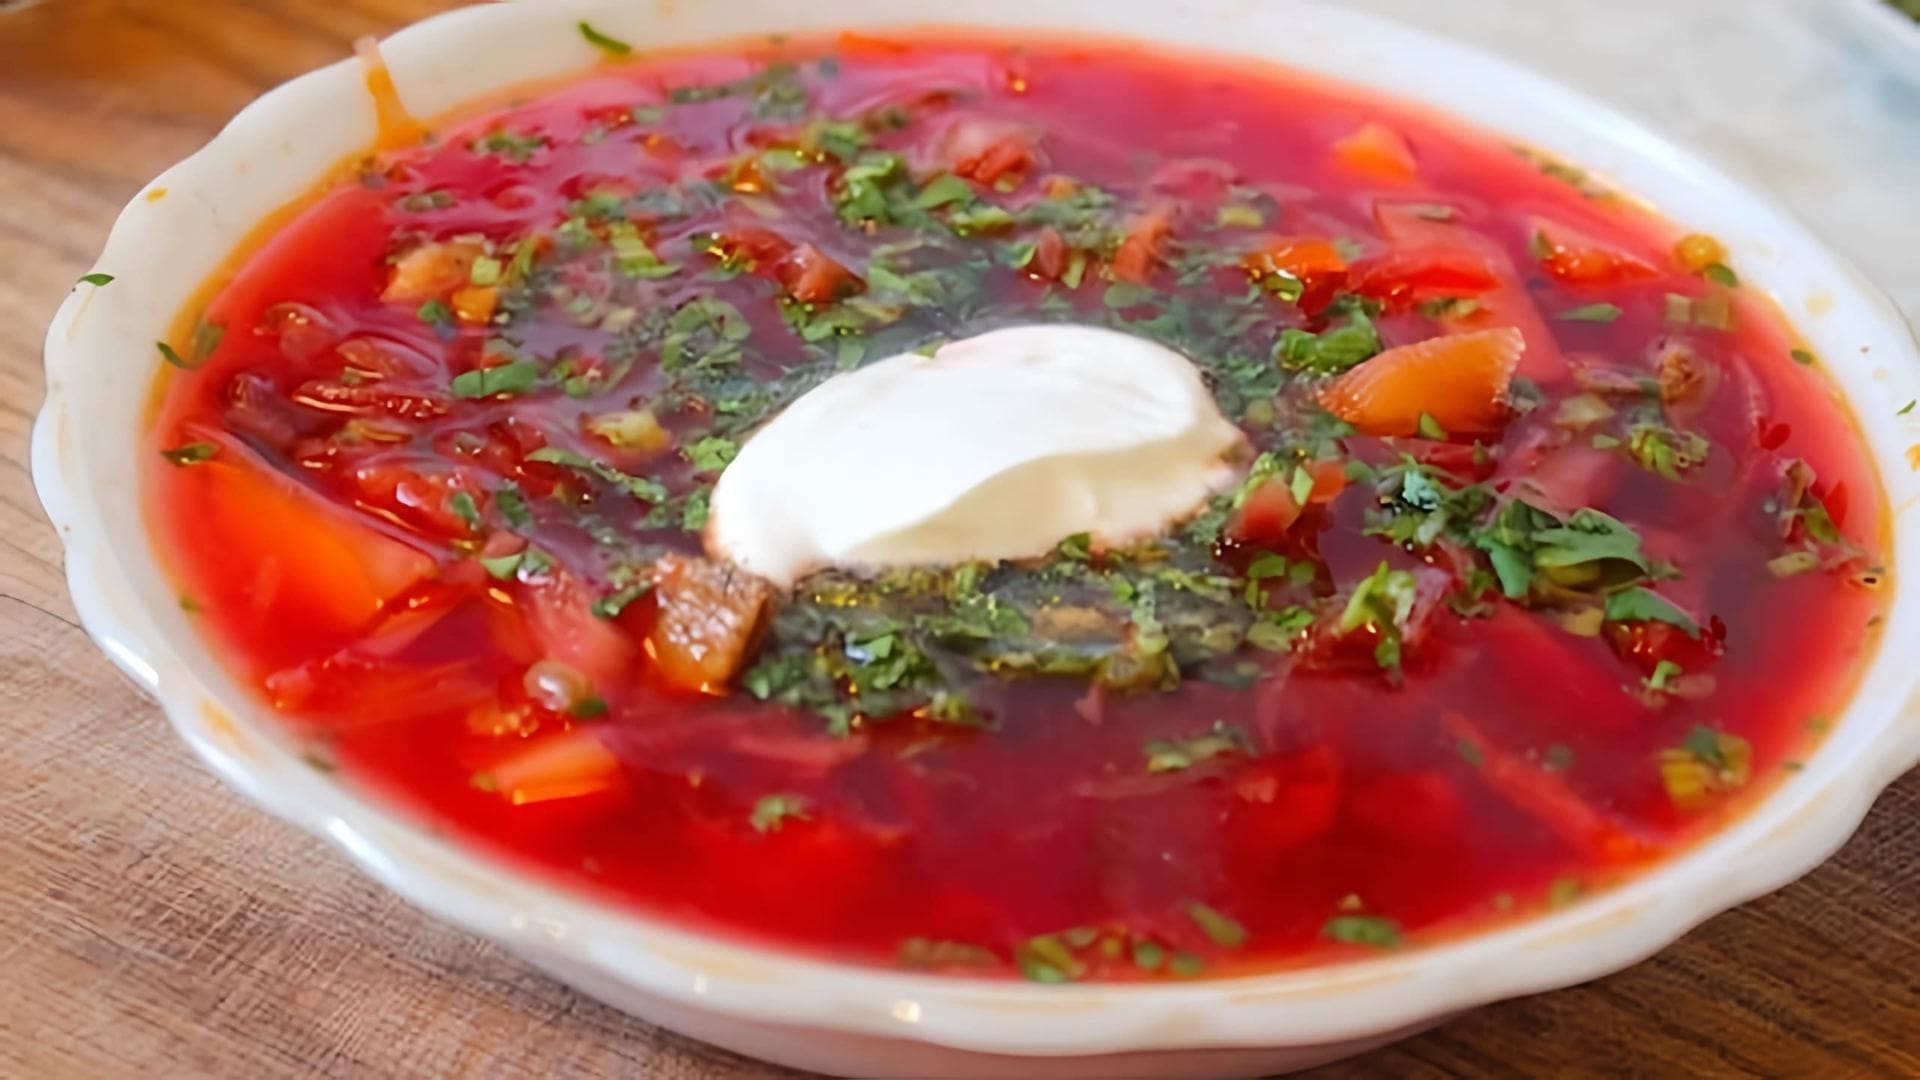 В этом видео демонстрируется процесс приготовления борща, традиционного русского блюда